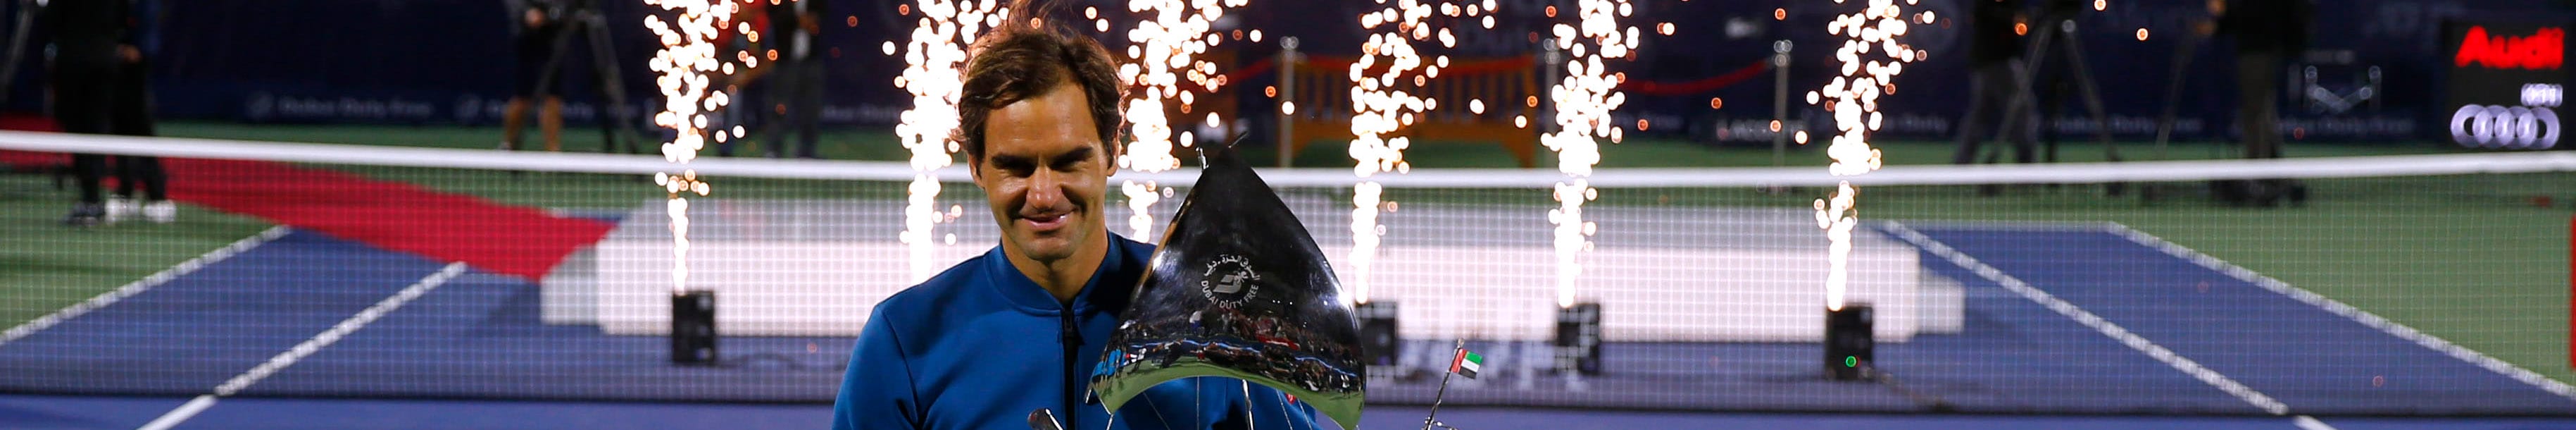 Roger Federer: Meilensteine auf dem Weg zur 100